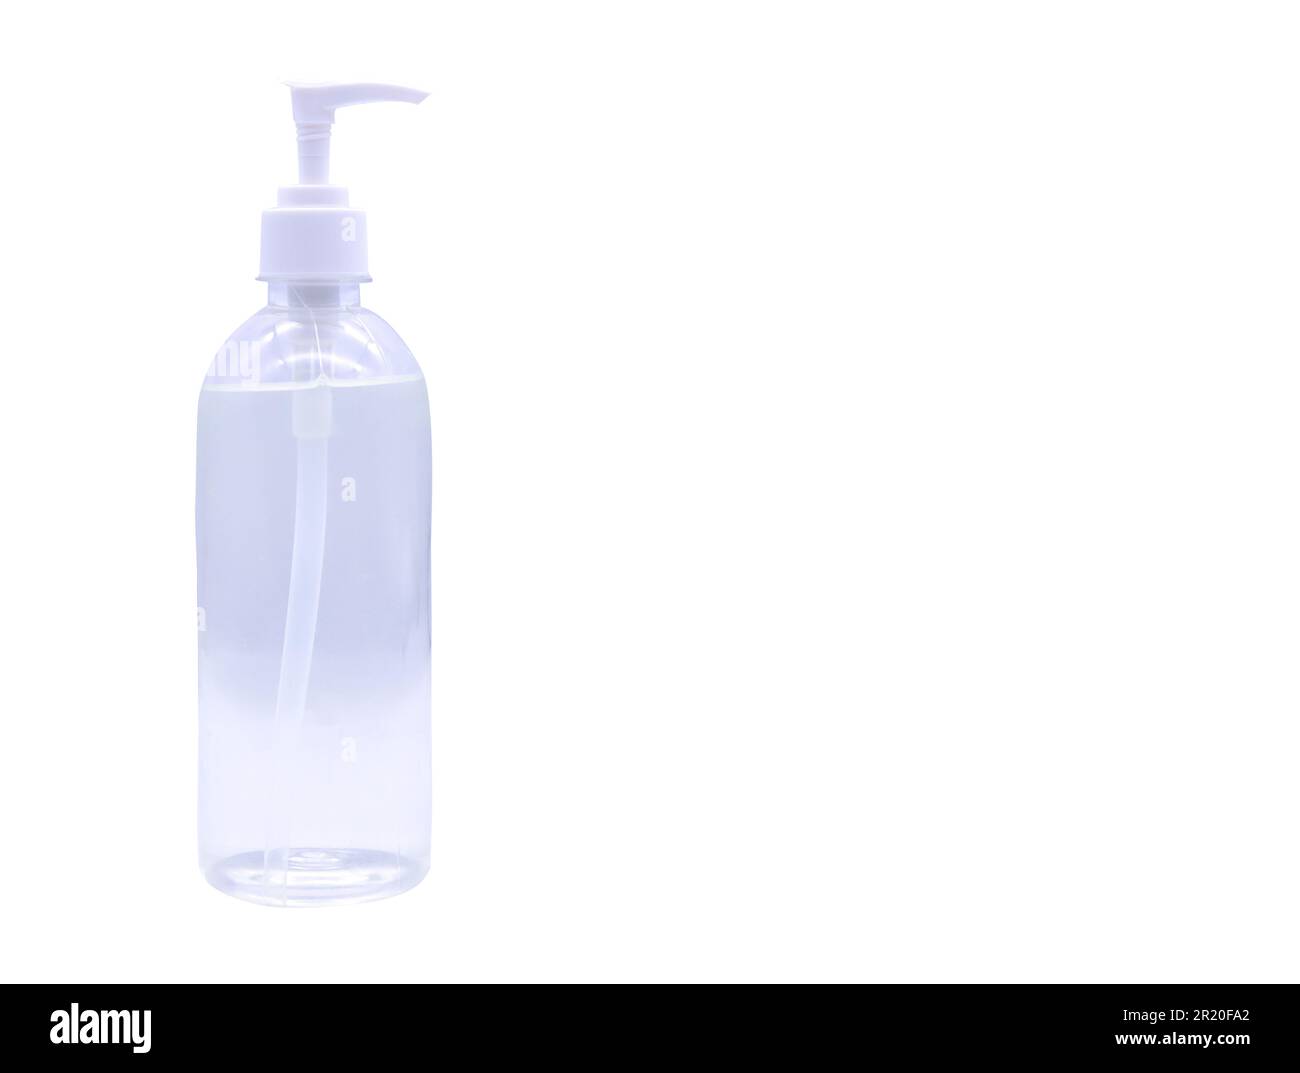 Coronavirus désinfectant pour les mains gel désinfectant pour les mains propres à la prévention covid 2019 gel d'alcool flacon en plastique pour se laver la main avec un passe-cheveux sur blanc Banque D'Images